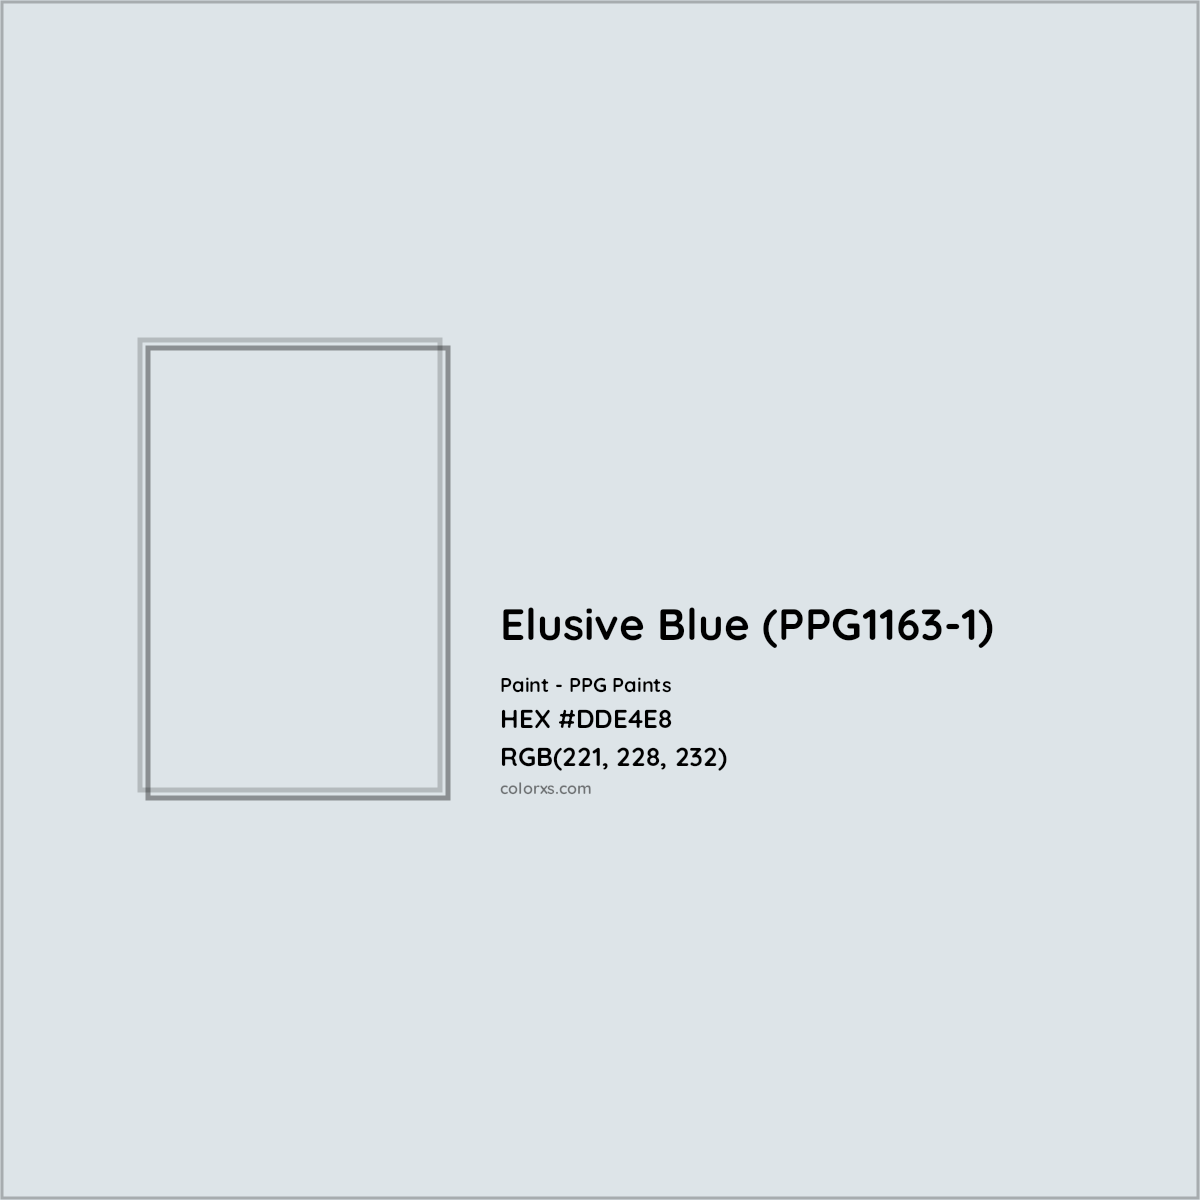 HEX #DDE4E8 Elusive Blue (PPG1163-1) Paint PPG Paints - Color Code